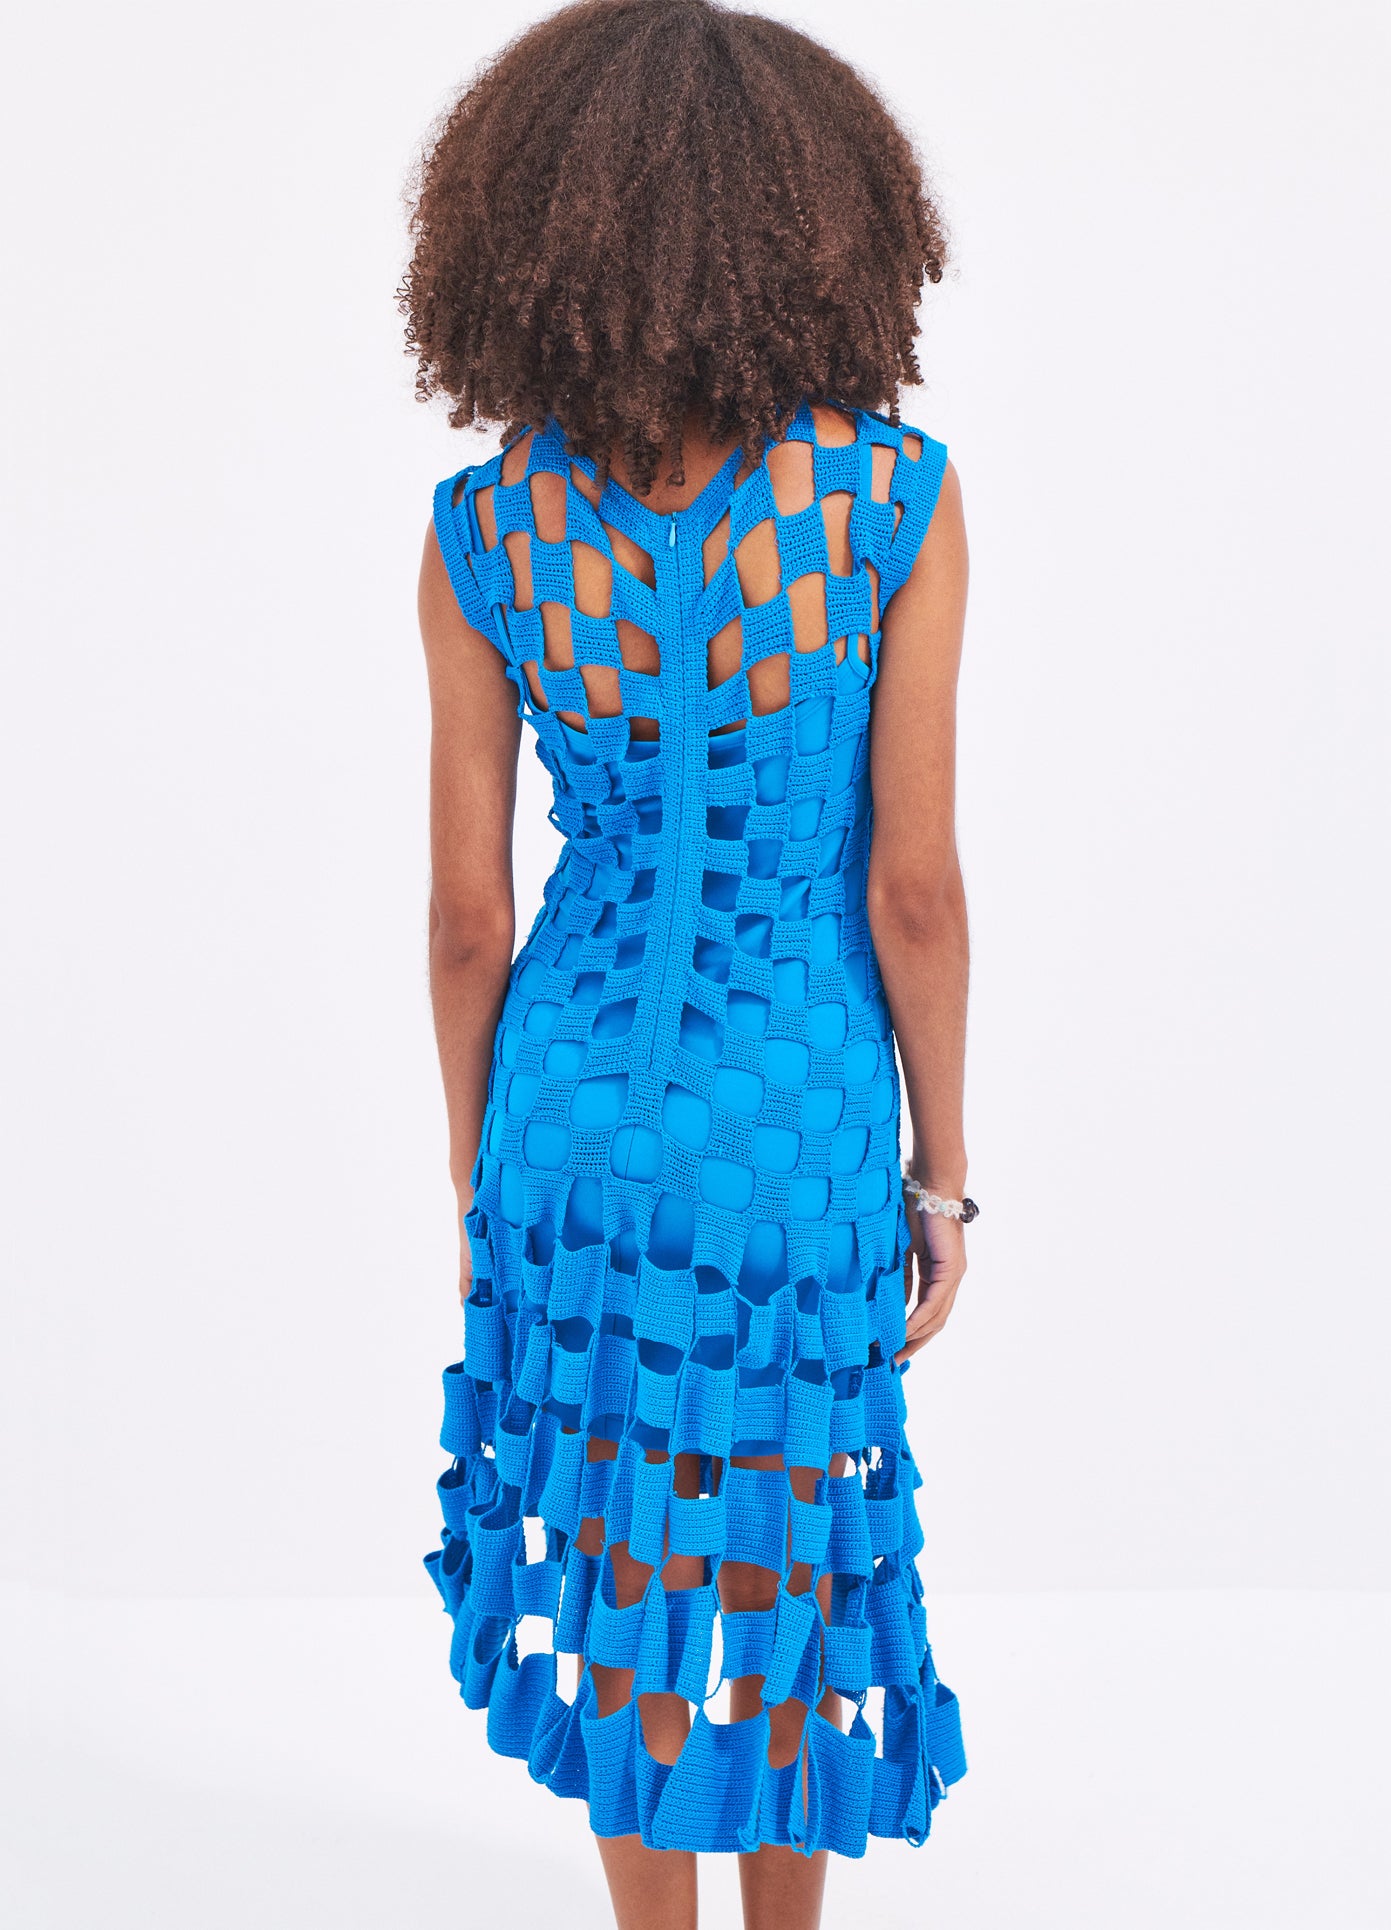 MONSE Square Crochet Dress in Blue on model back view